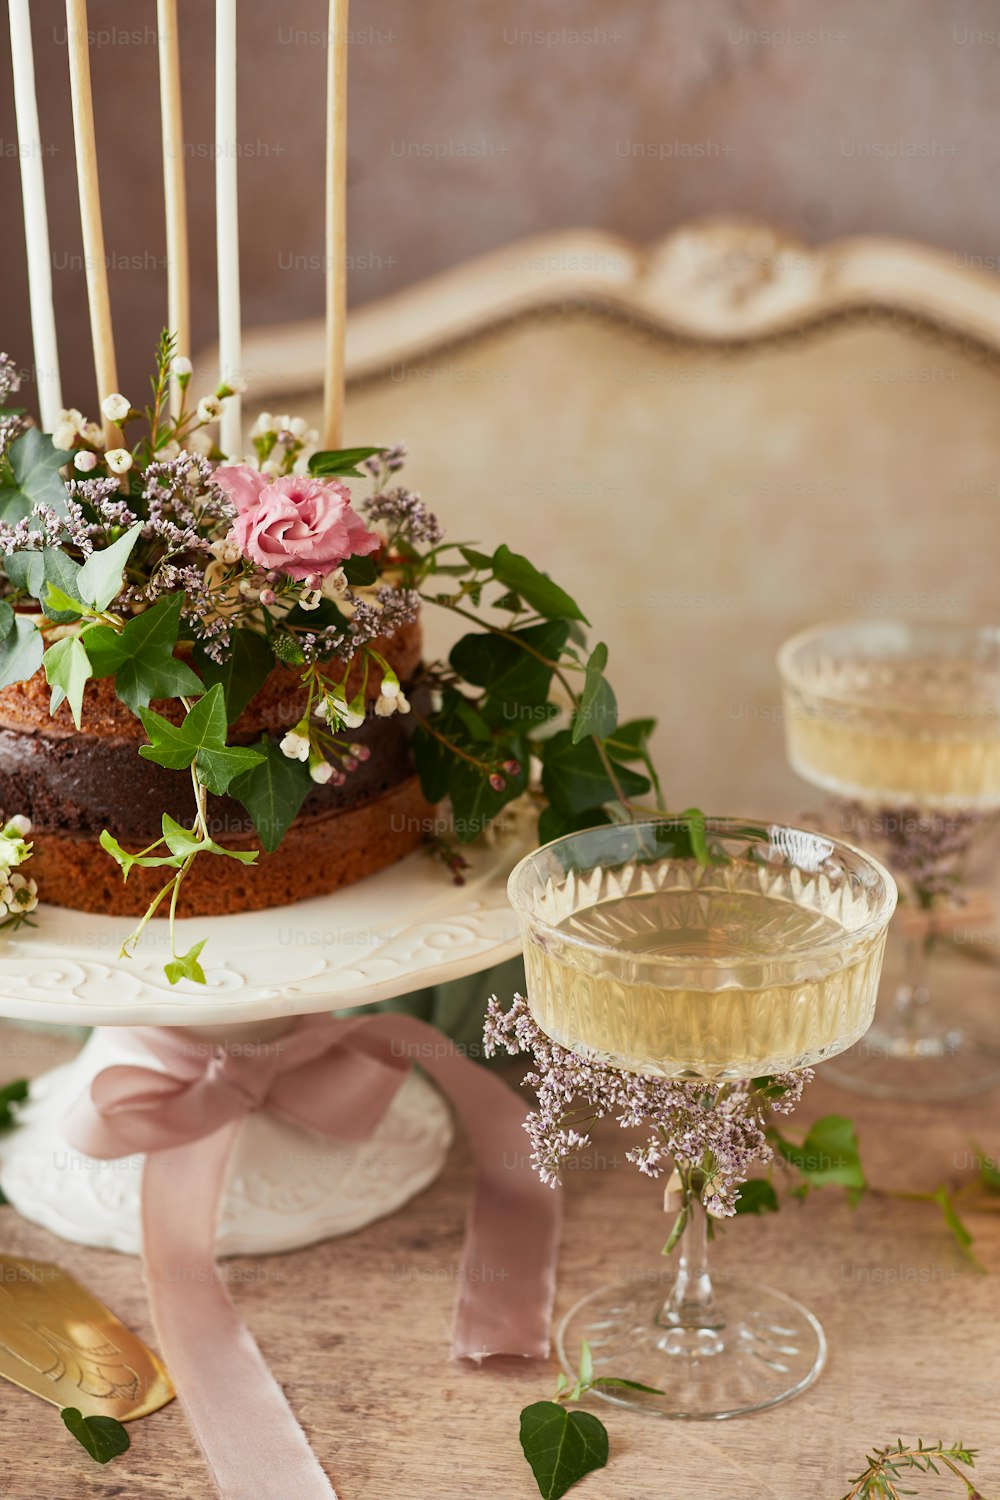 Un pastel en una mesa con velas y flores